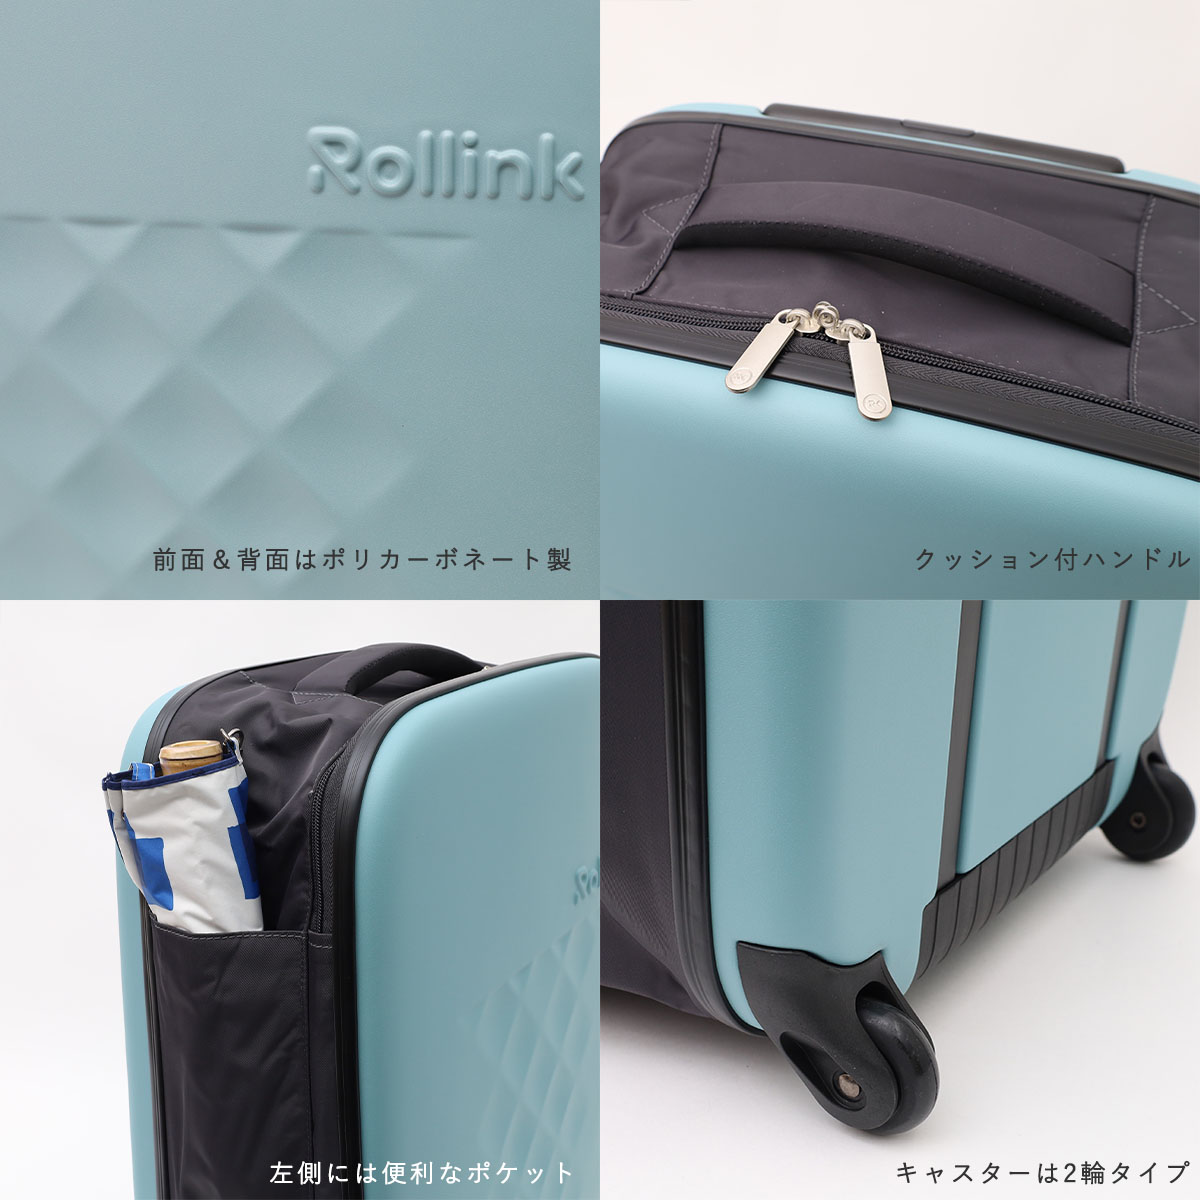 スーツケース | Rollink ローリンク FLEX フォーダブル 海外旅行